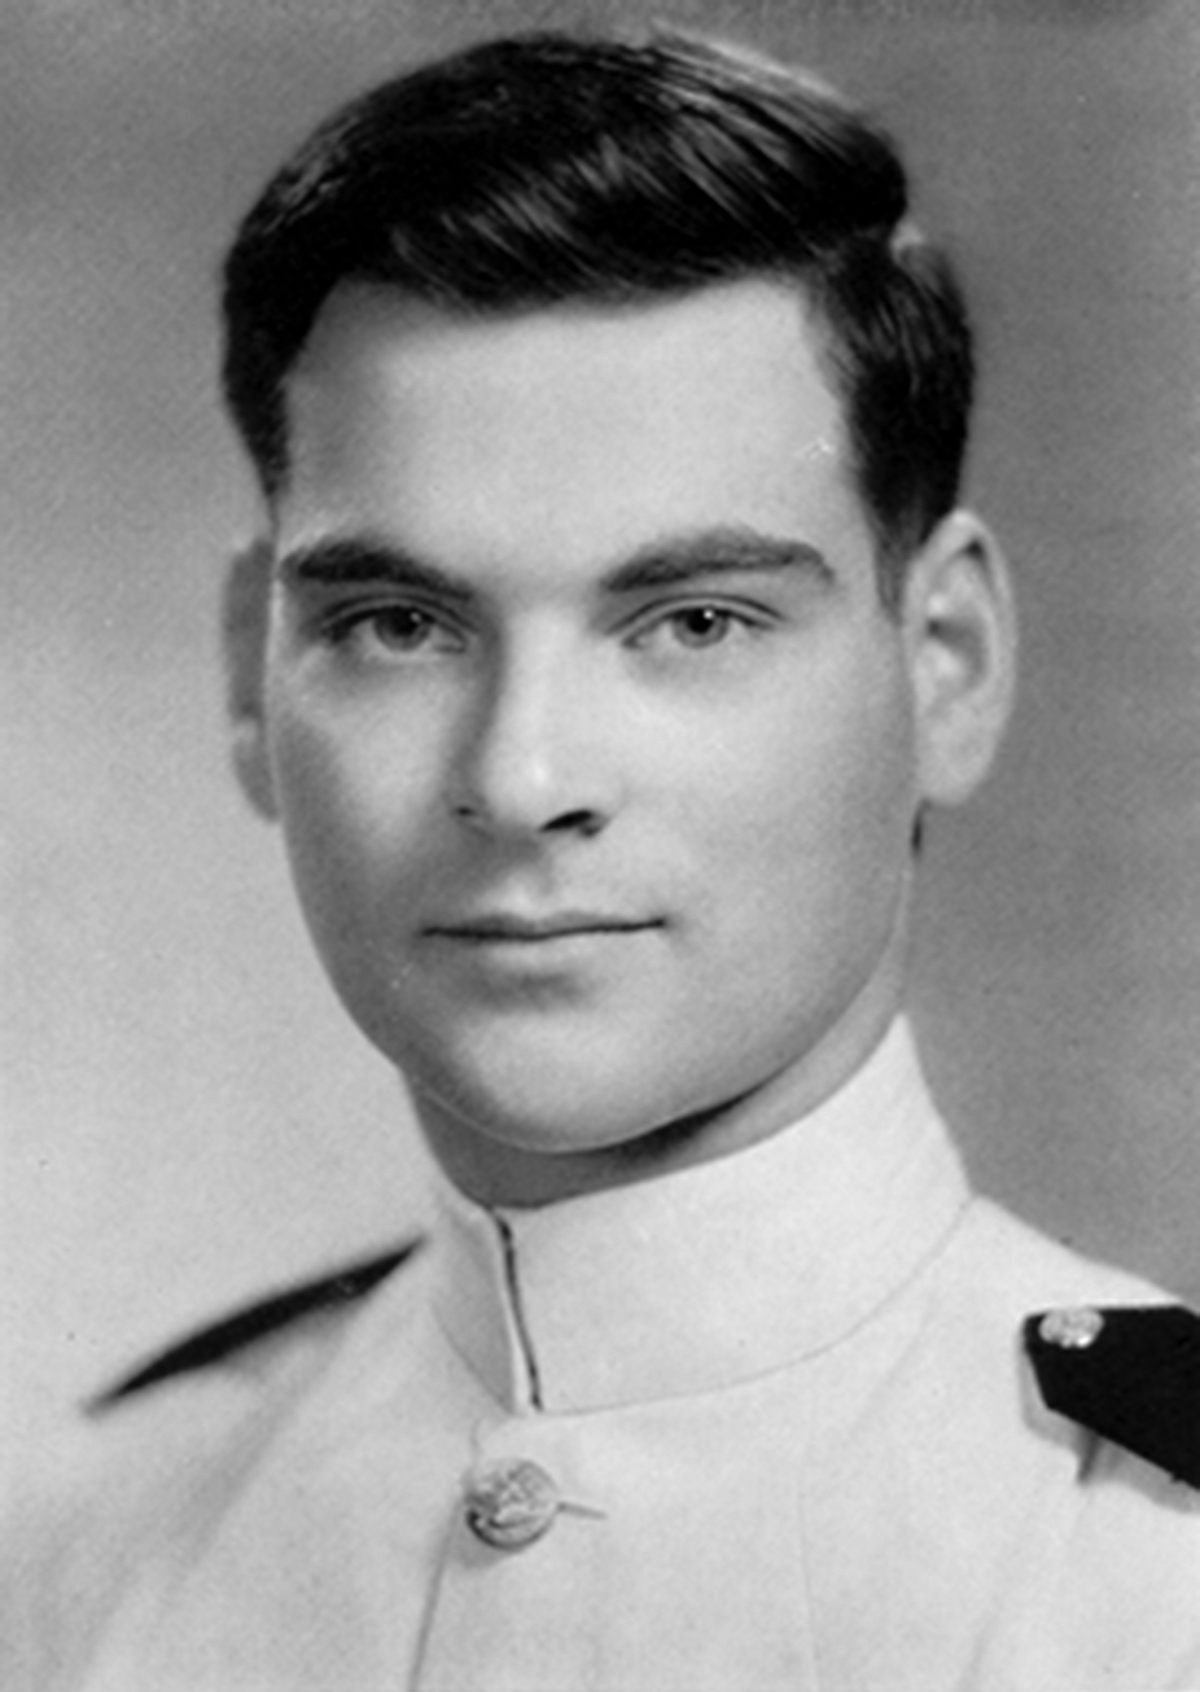 Joseph K. Taussig, Jr. in 1941